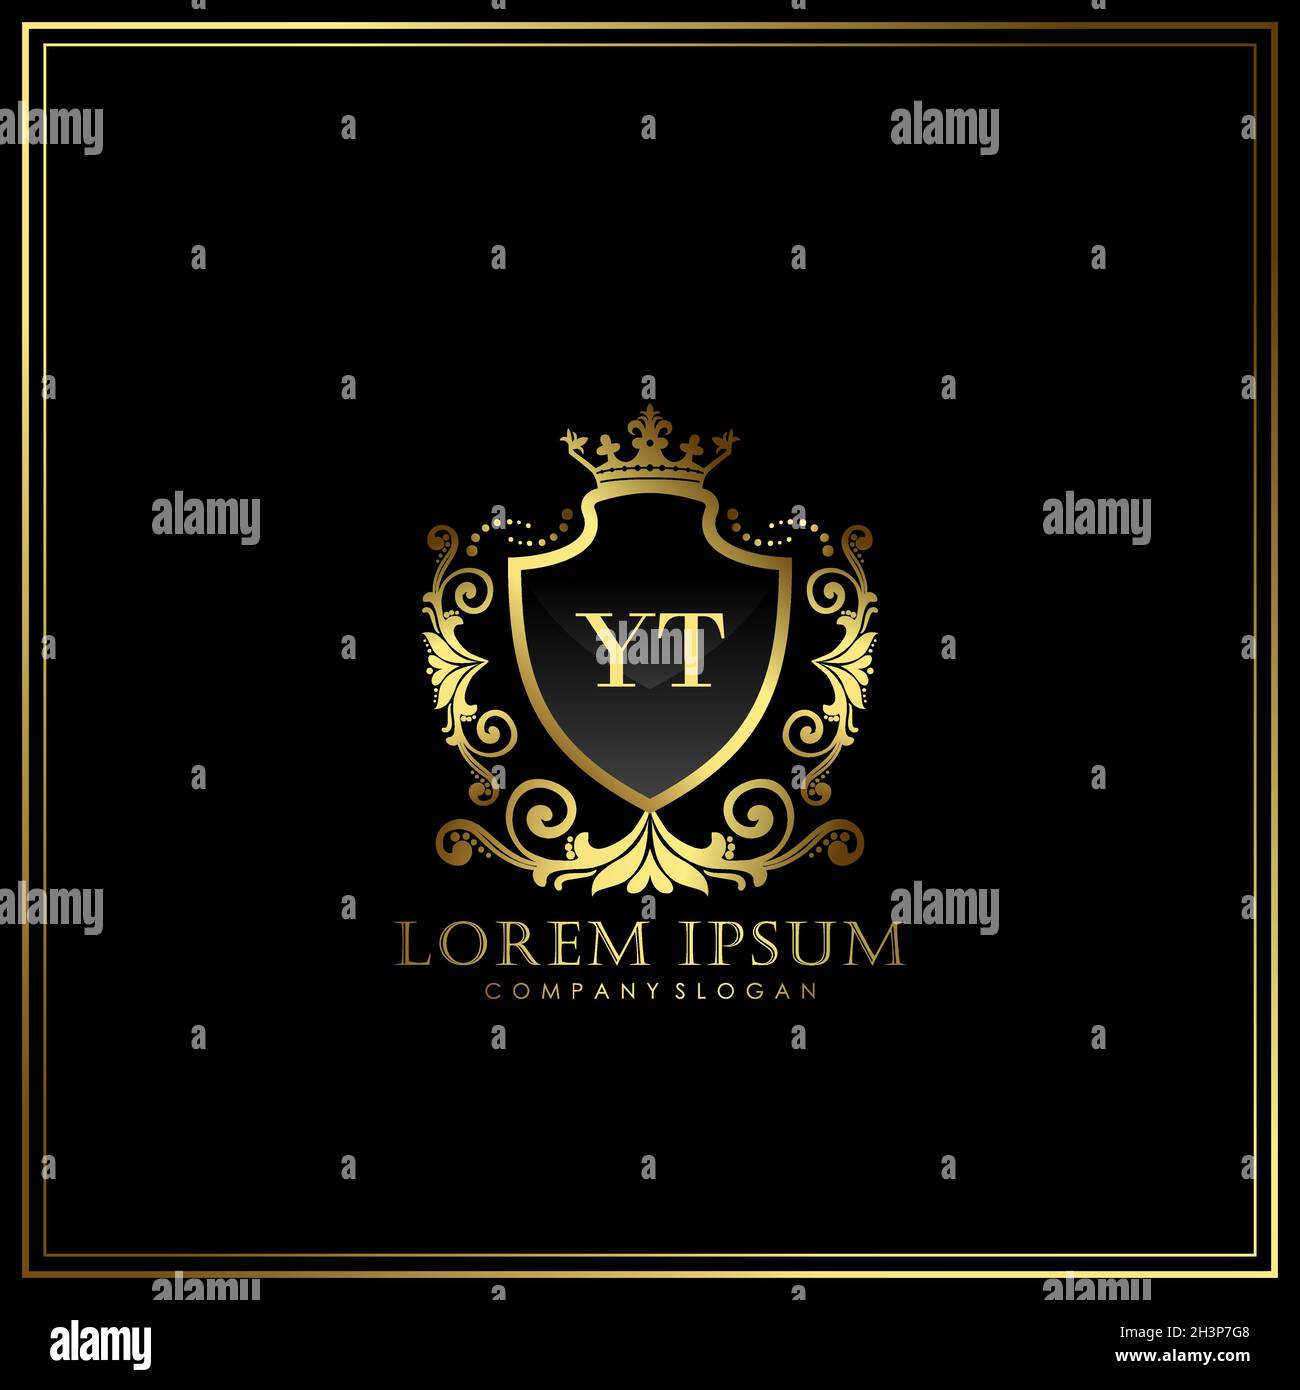 YT Anfangsbuchstabe Luxus Logo Vorlage in Vektor für Restaurant, Royalty, Boutique, Cafe, Hotel, Wappentisch, Schmuck, Mode und andere Vektorgrafik Stock Vektor